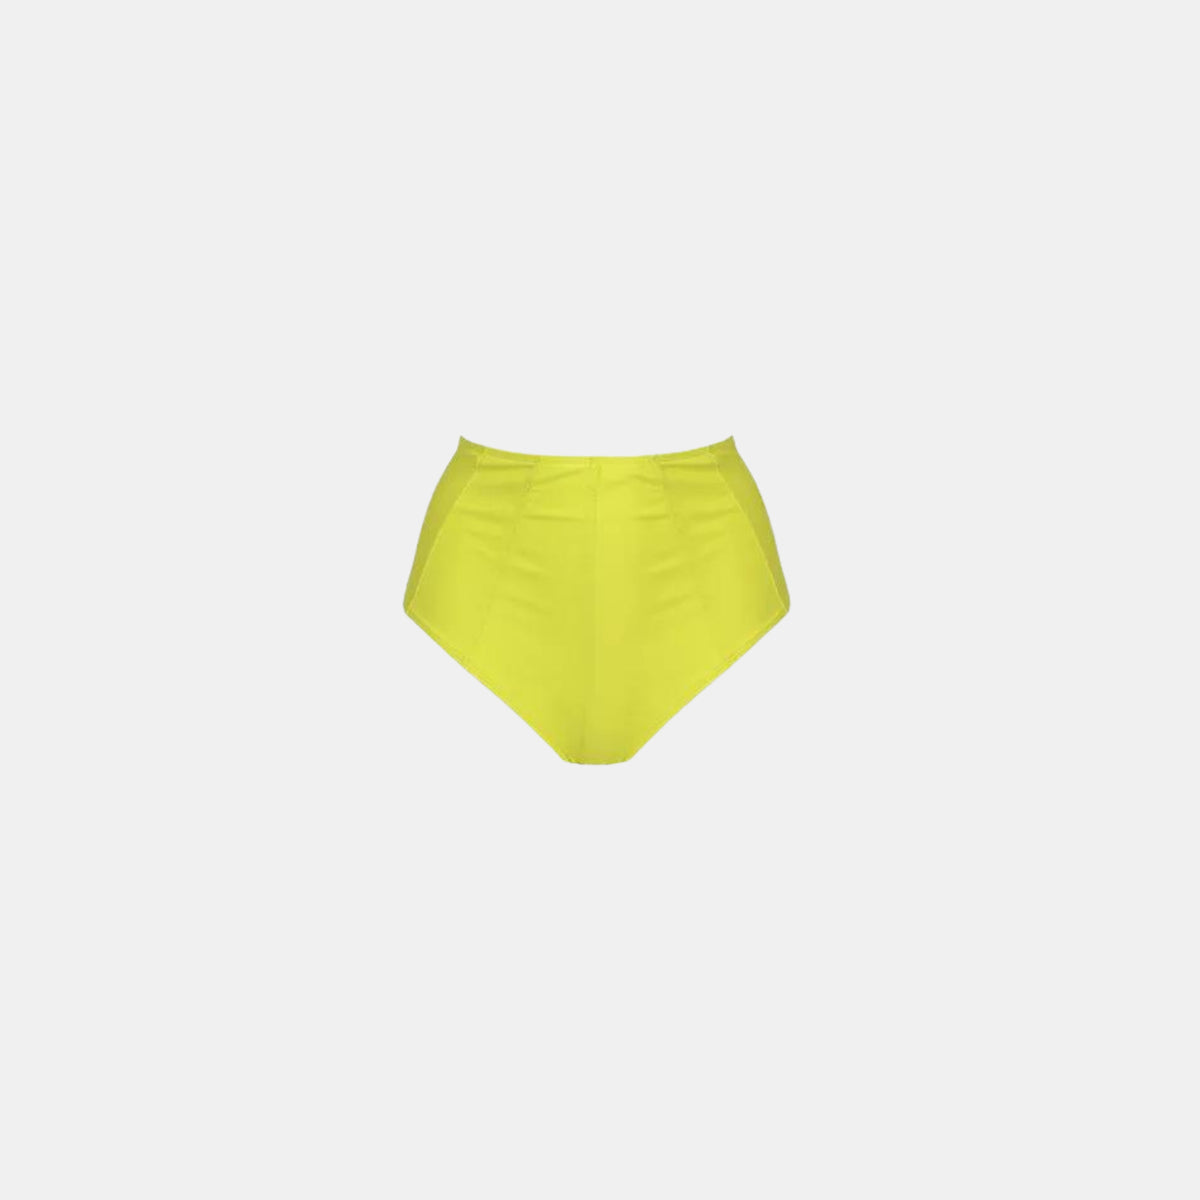 Shani Shemer Taylor High Waisted Bikini Bottom in Yellow